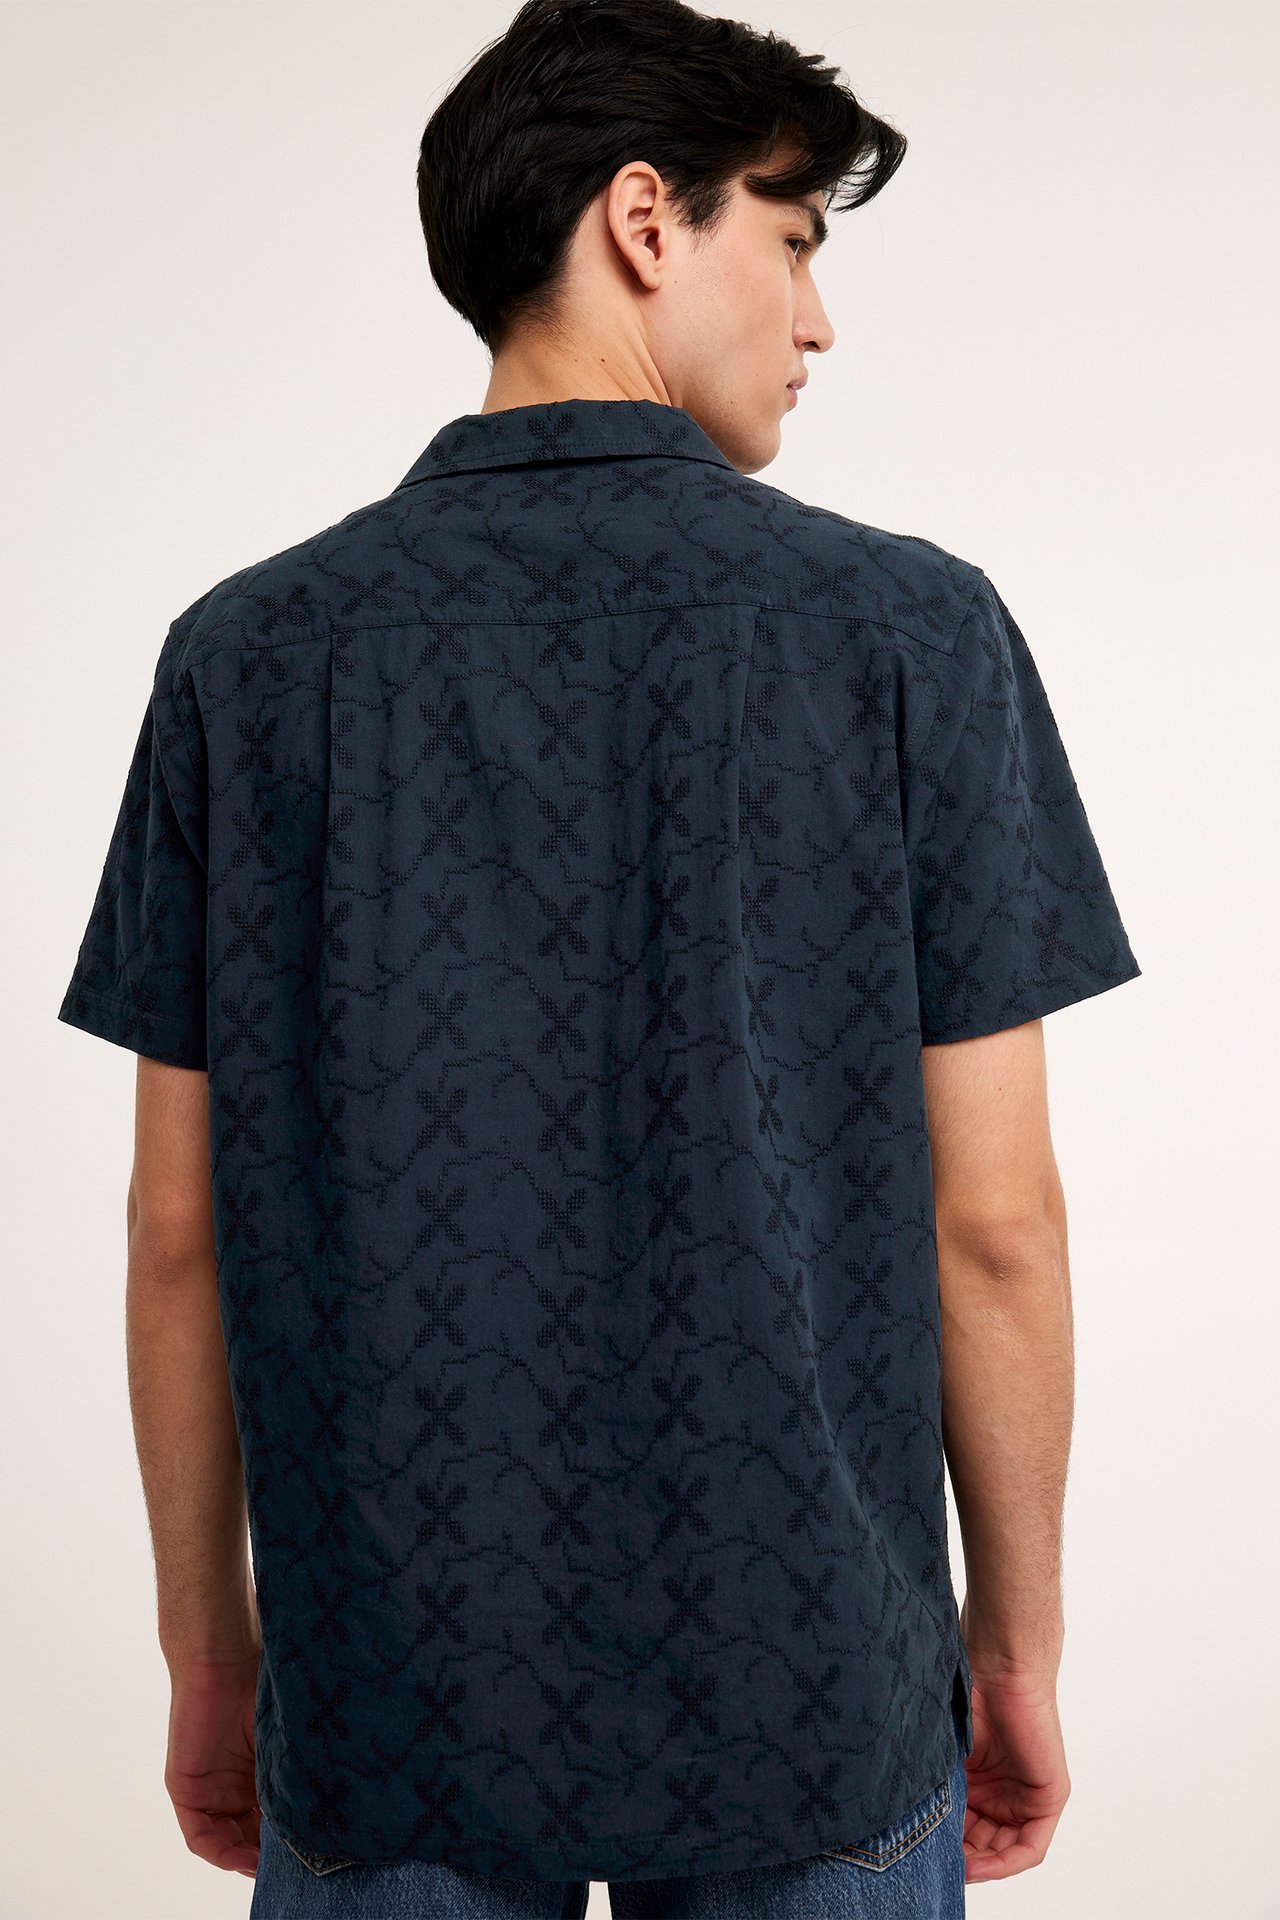 Resortskjorta med brodyr - Mörkblå - 189cm / Storlek: M - 3